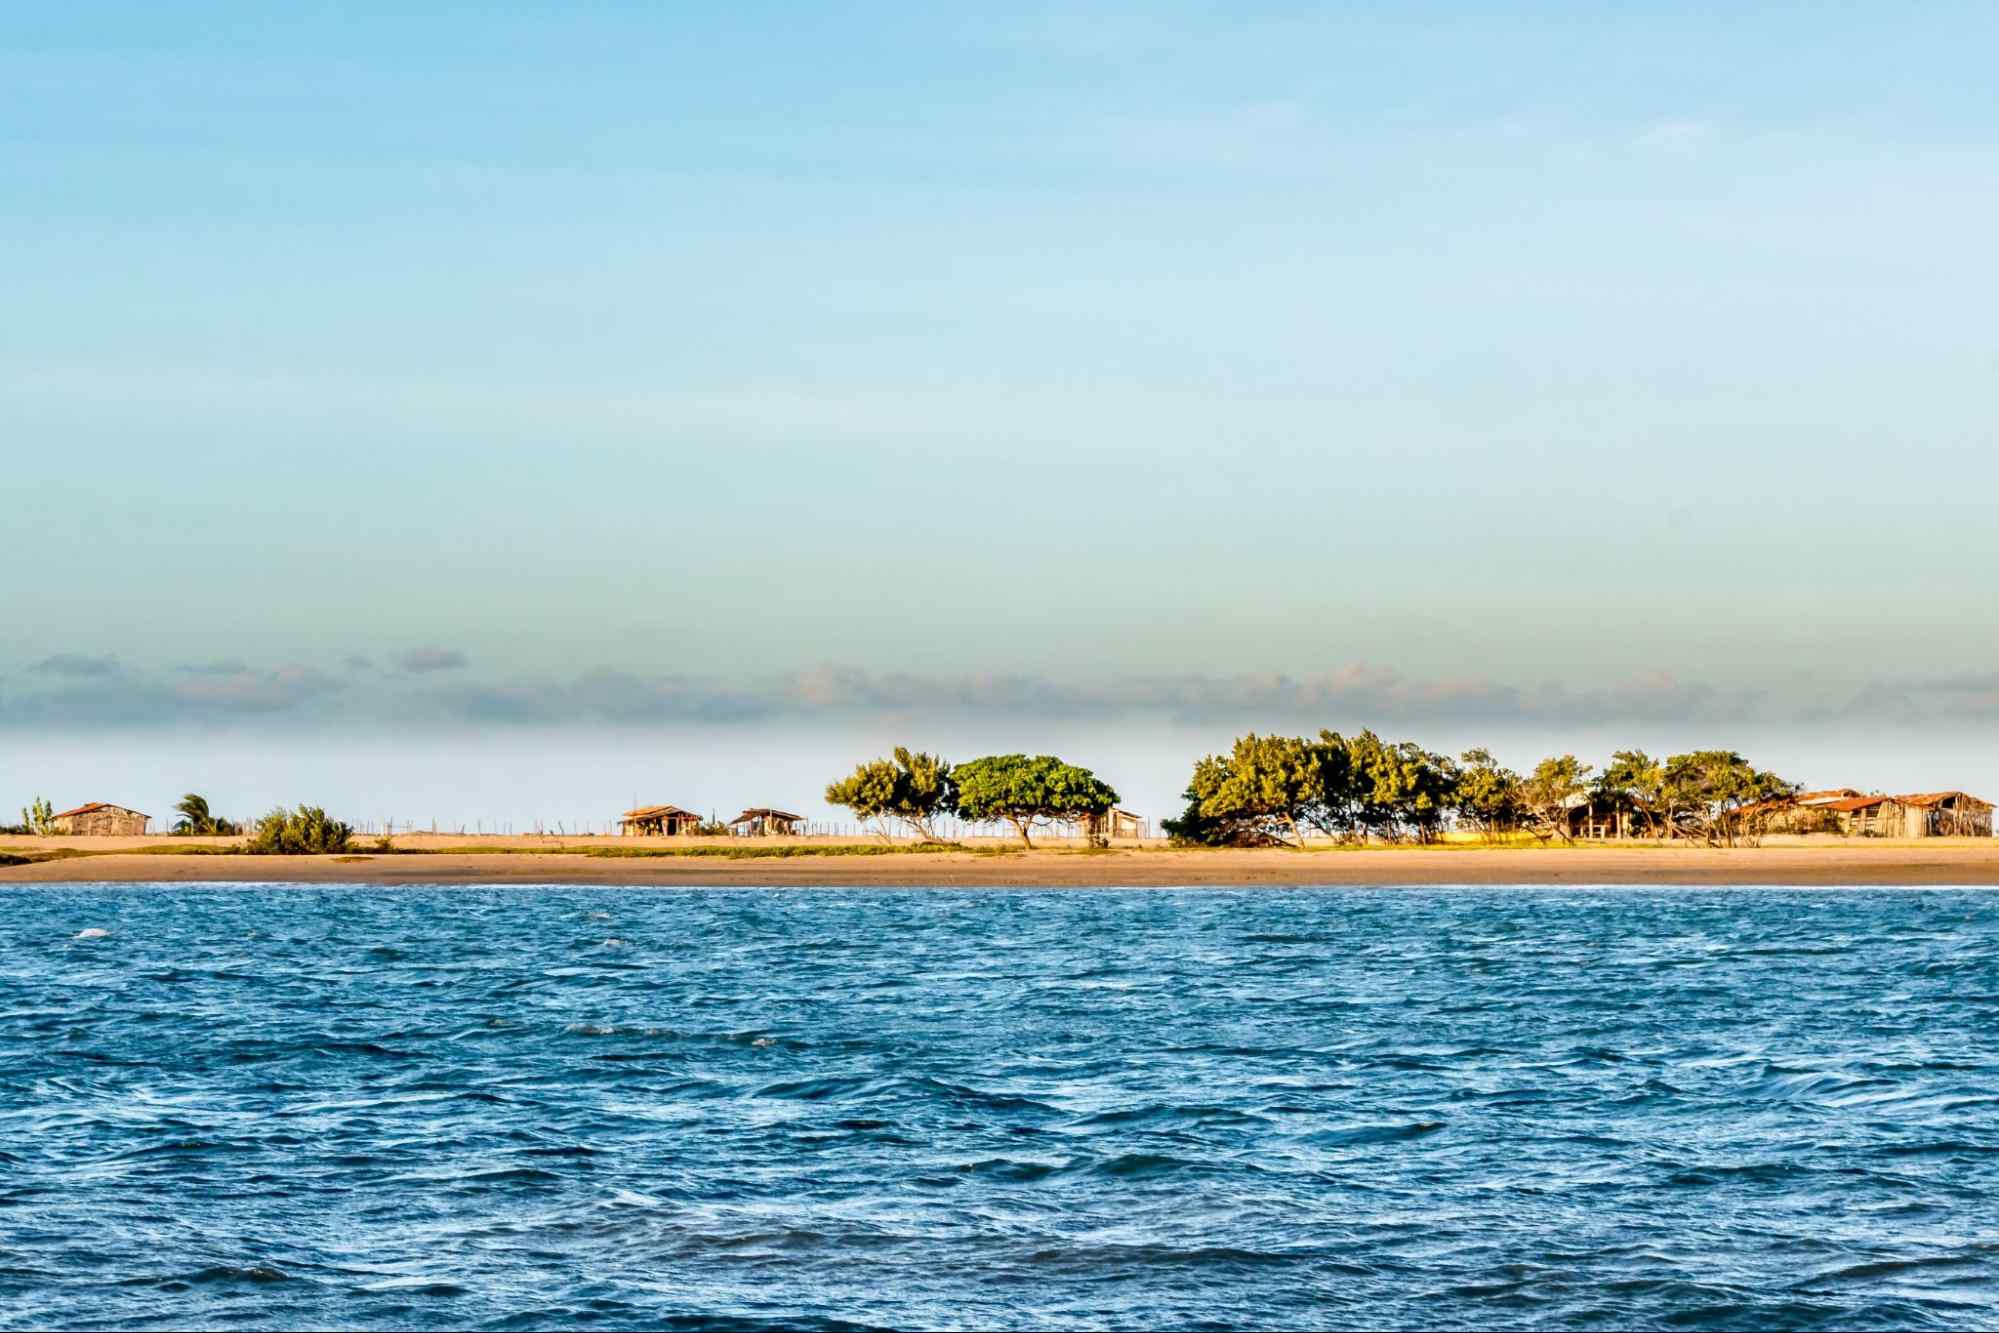 Praia de Guajiru em Trairi CE, vista do ponto de vista do mar. Ao fundo está a faixa de areia com algumas árvores e pequenas casas, enquanto o mar é de um azul intenso.